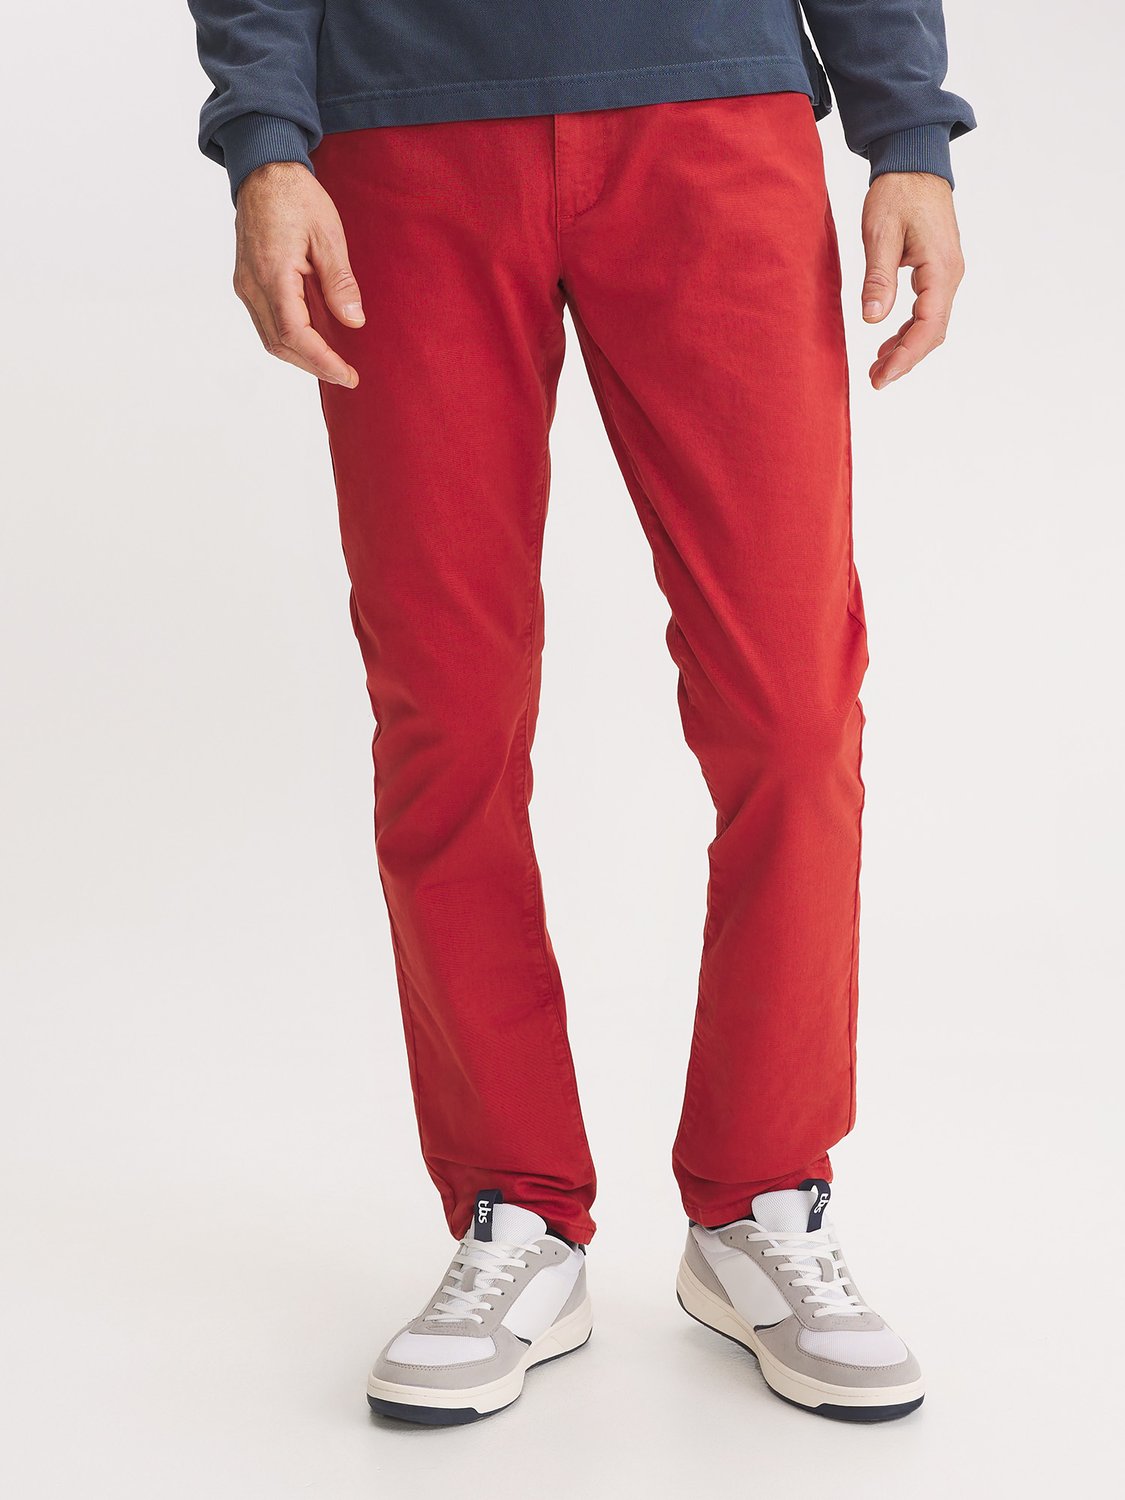 Pantalon Homme Coton Rouge